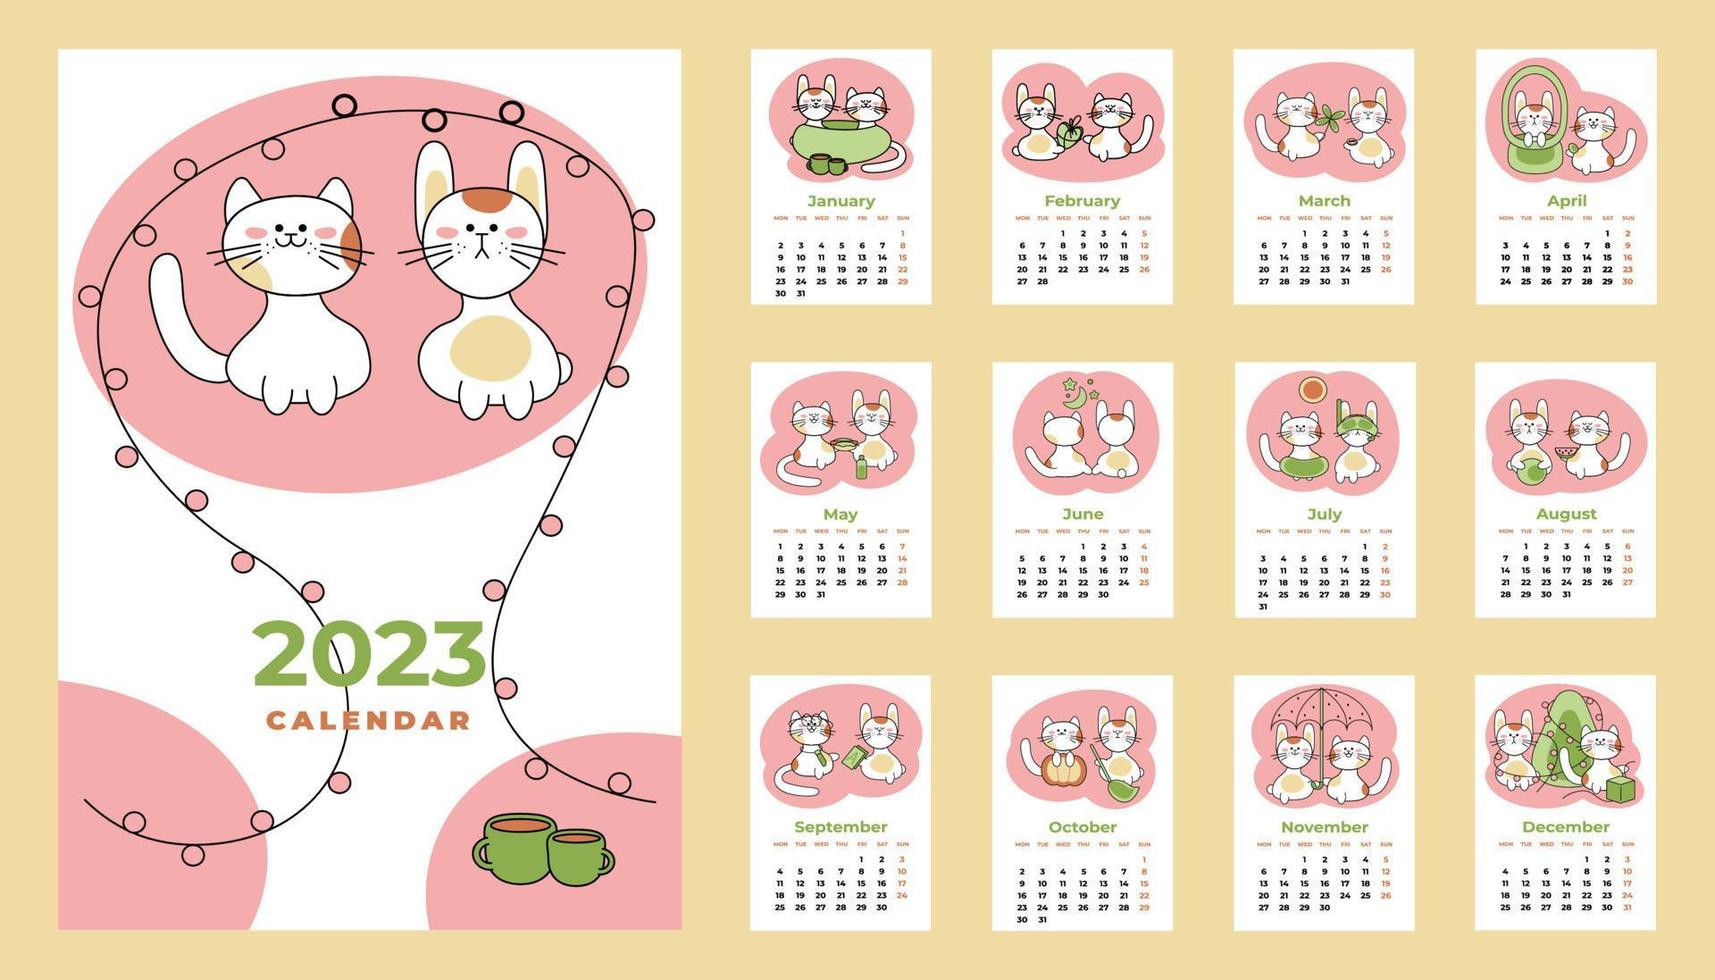 calendrier 2023. feuilles de calendrier avec tous les mois, y compris la couverture en anglais. illustration de vecteur de dessin animé.